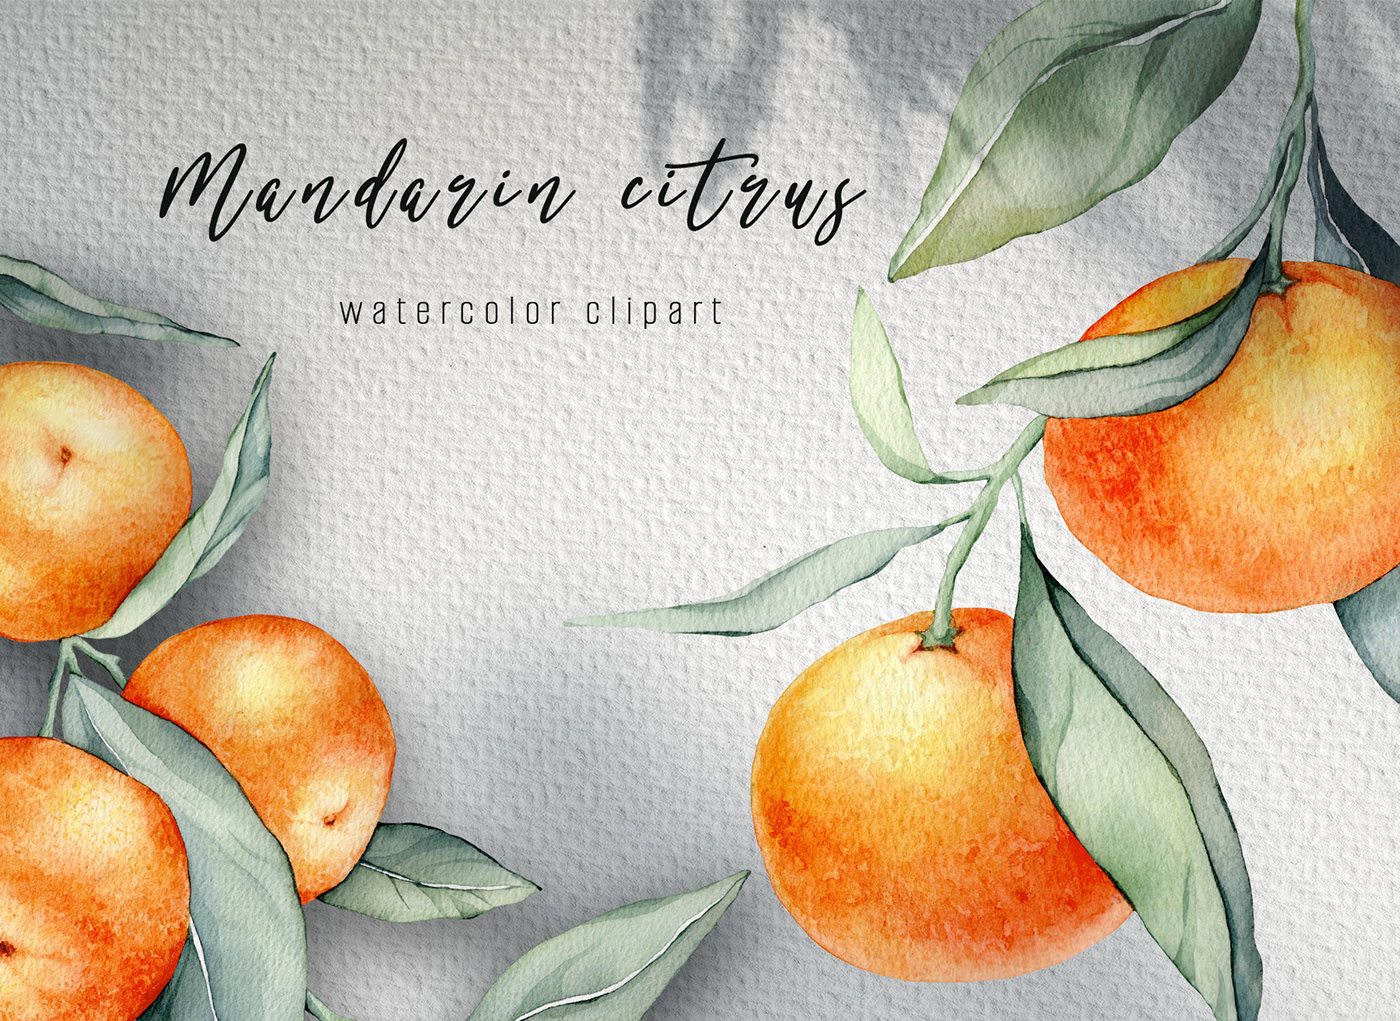 mandarin Tangarine orange watercolor citrus Fruit pattern artwork